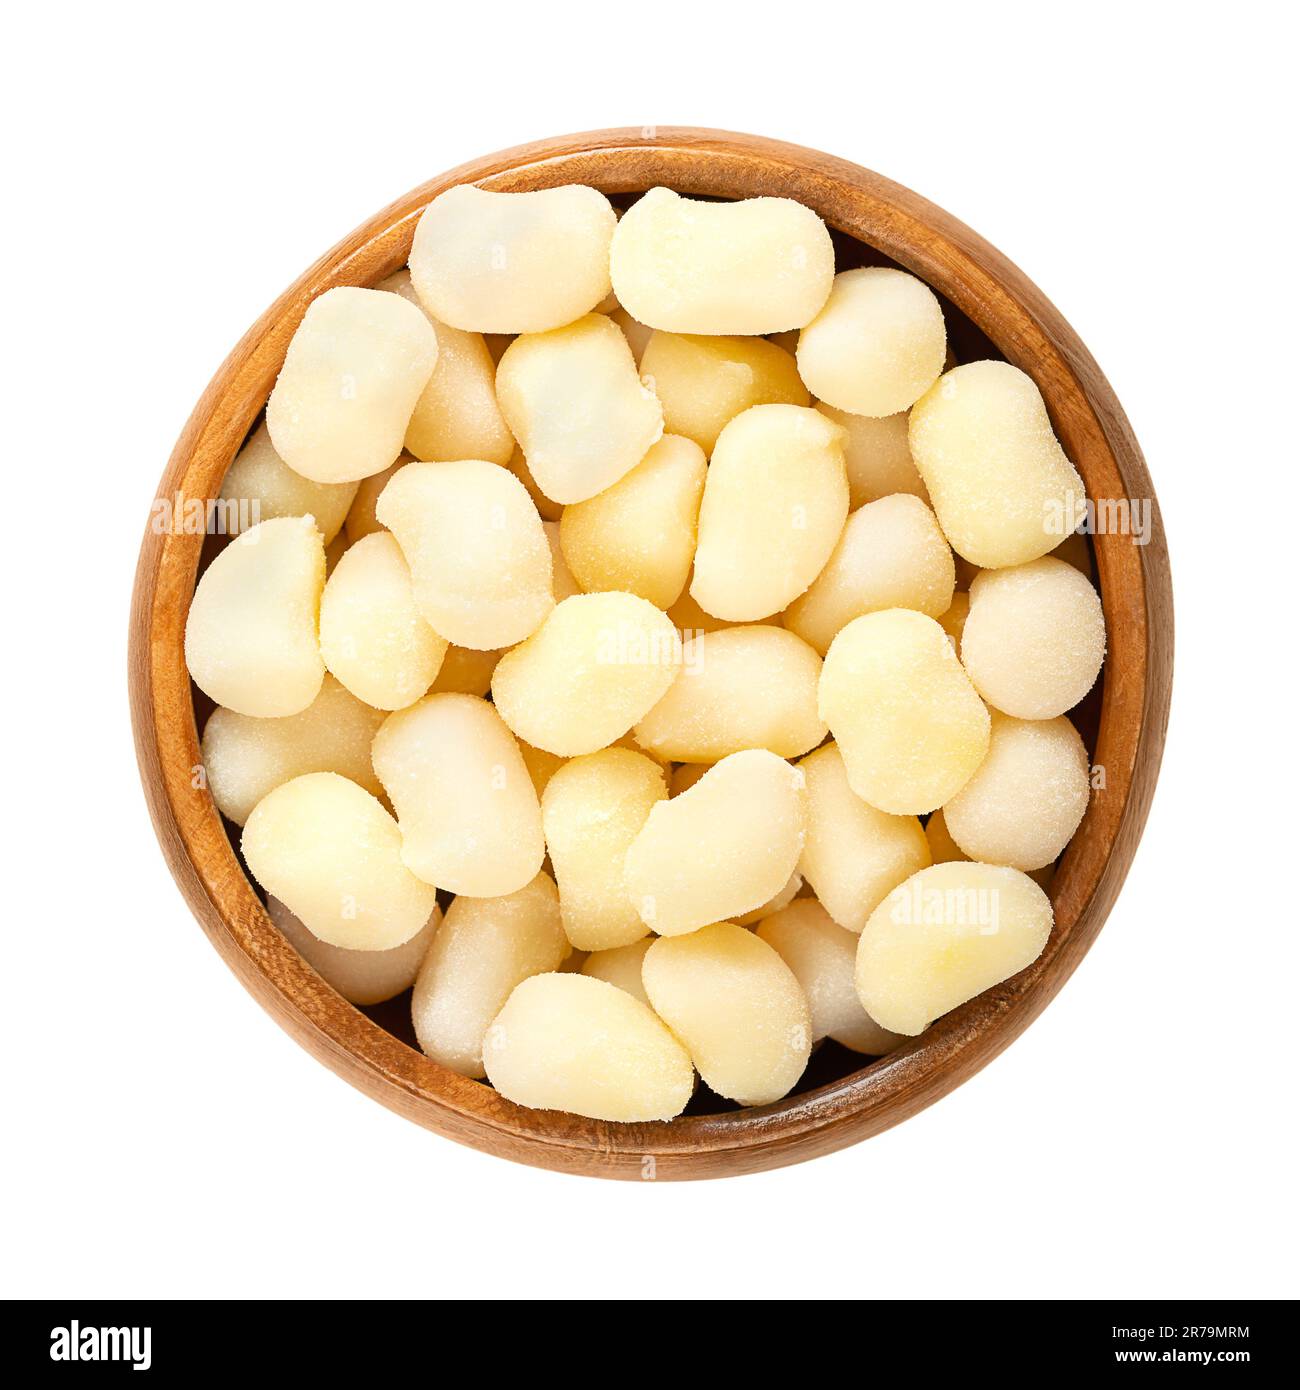 Gnocchini, mini gnocchi, dans un bol en bois. Boulettes de cuisine italienne. Petits morceaux de pâte non cuits, faits de pomme de terre, de farine de blé, d'œuf et de sel. Banque D'Images